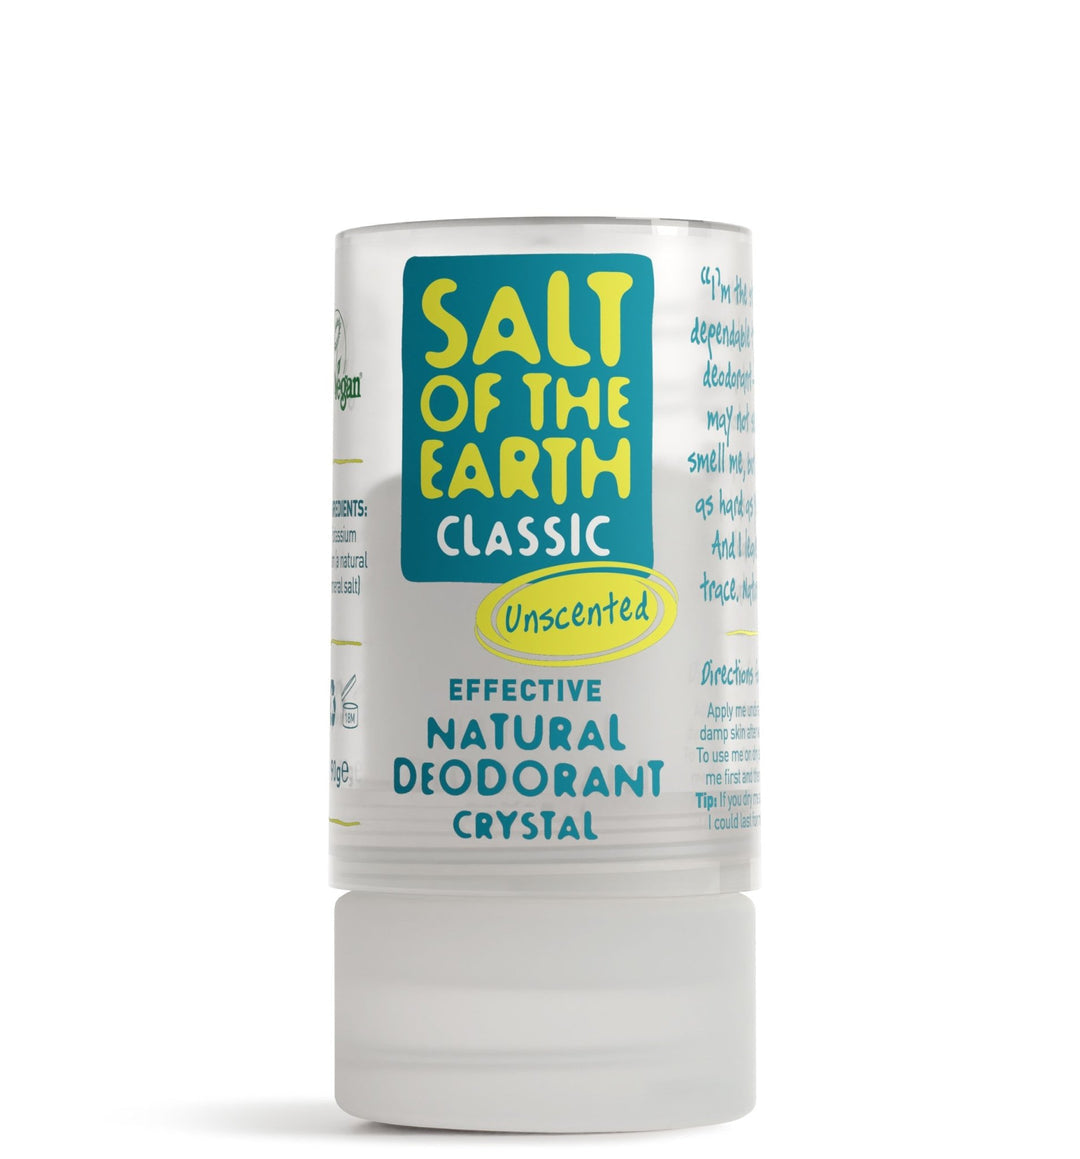 Salt of the Earth Classic Deodorant Crystal 90g